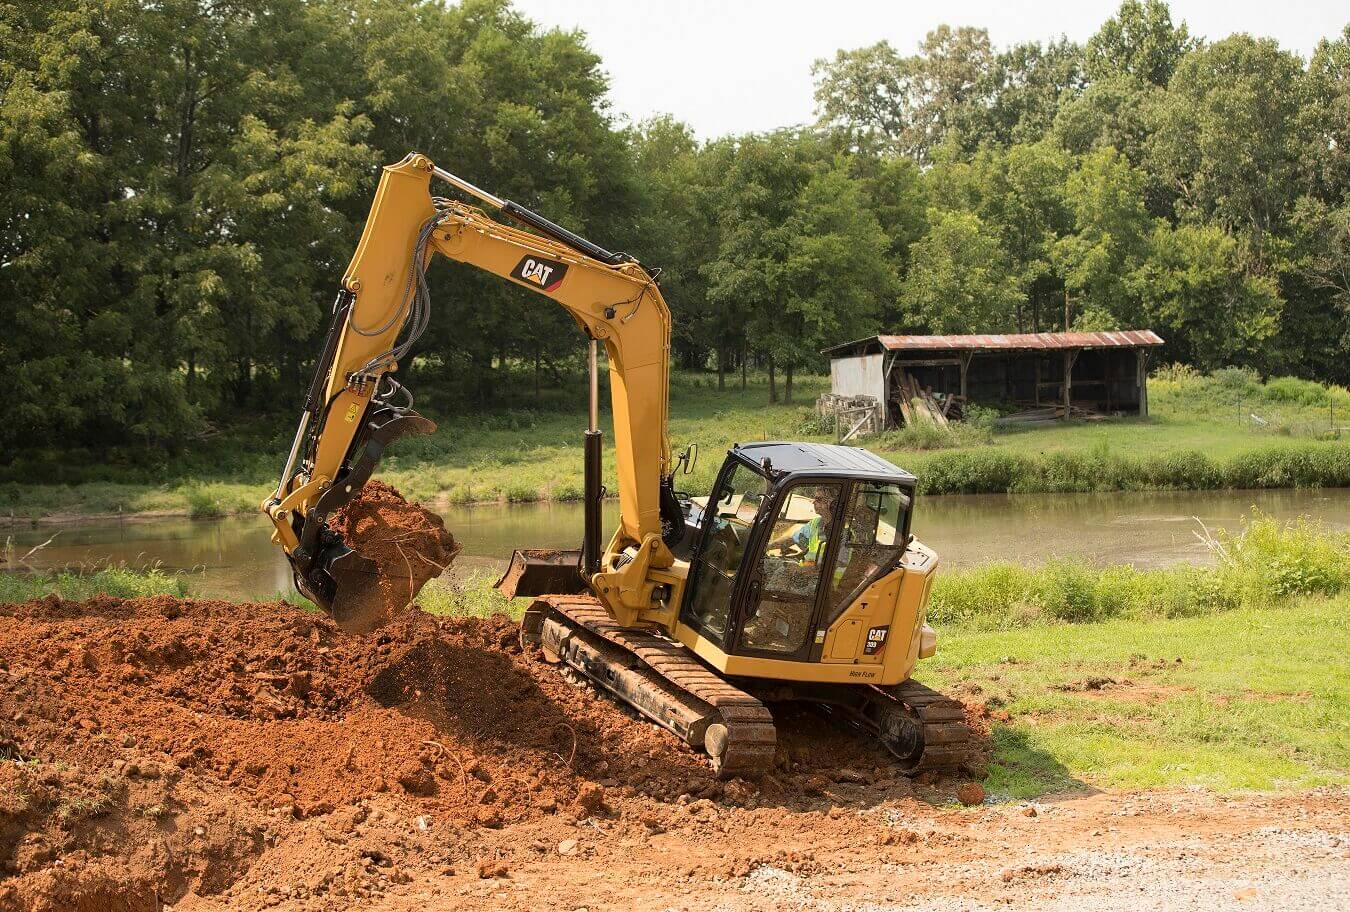 Escavatore Caterpillar a noleggio CGTE durante lavoro di scavo per opere di cura del verde CGTE Noleggio